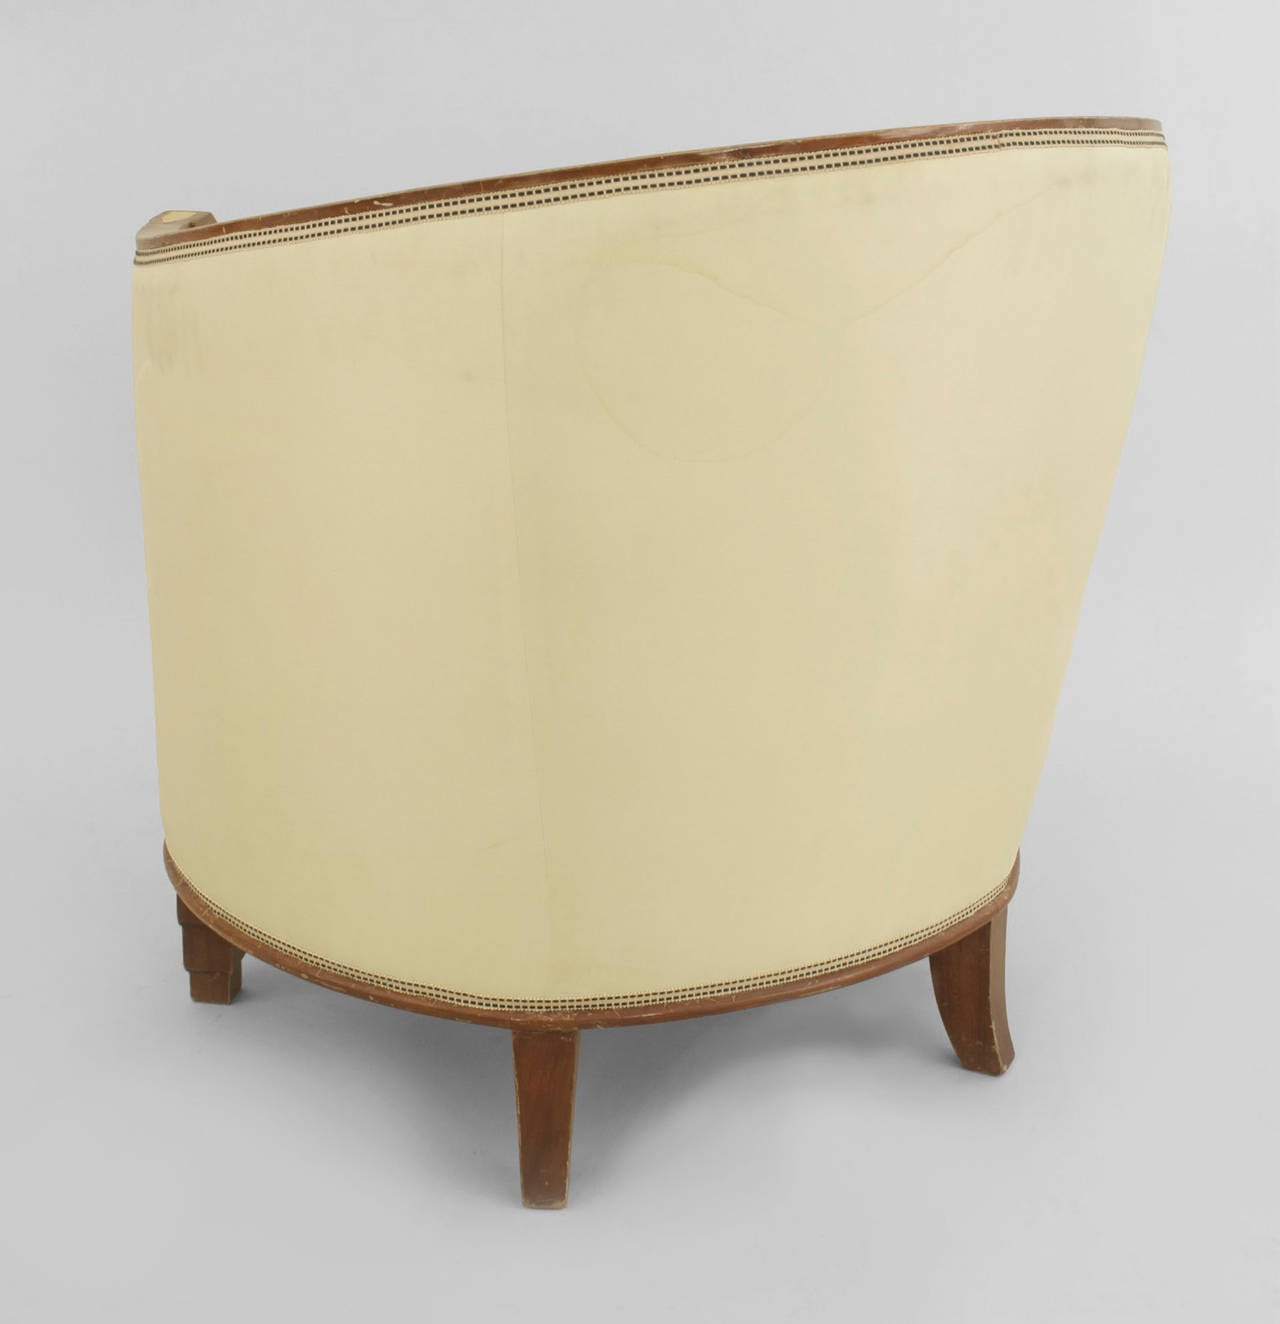 Zwei französische Art Deco Sessel mit runder, wannenförmiger Rückenlehne aus Mahagoni, mit Intarsien auf der Vorderseite der Armlehnen und gepolstert mit gelbem Satin und einem Sitzkissen. (PREIS ALS PAAR)
